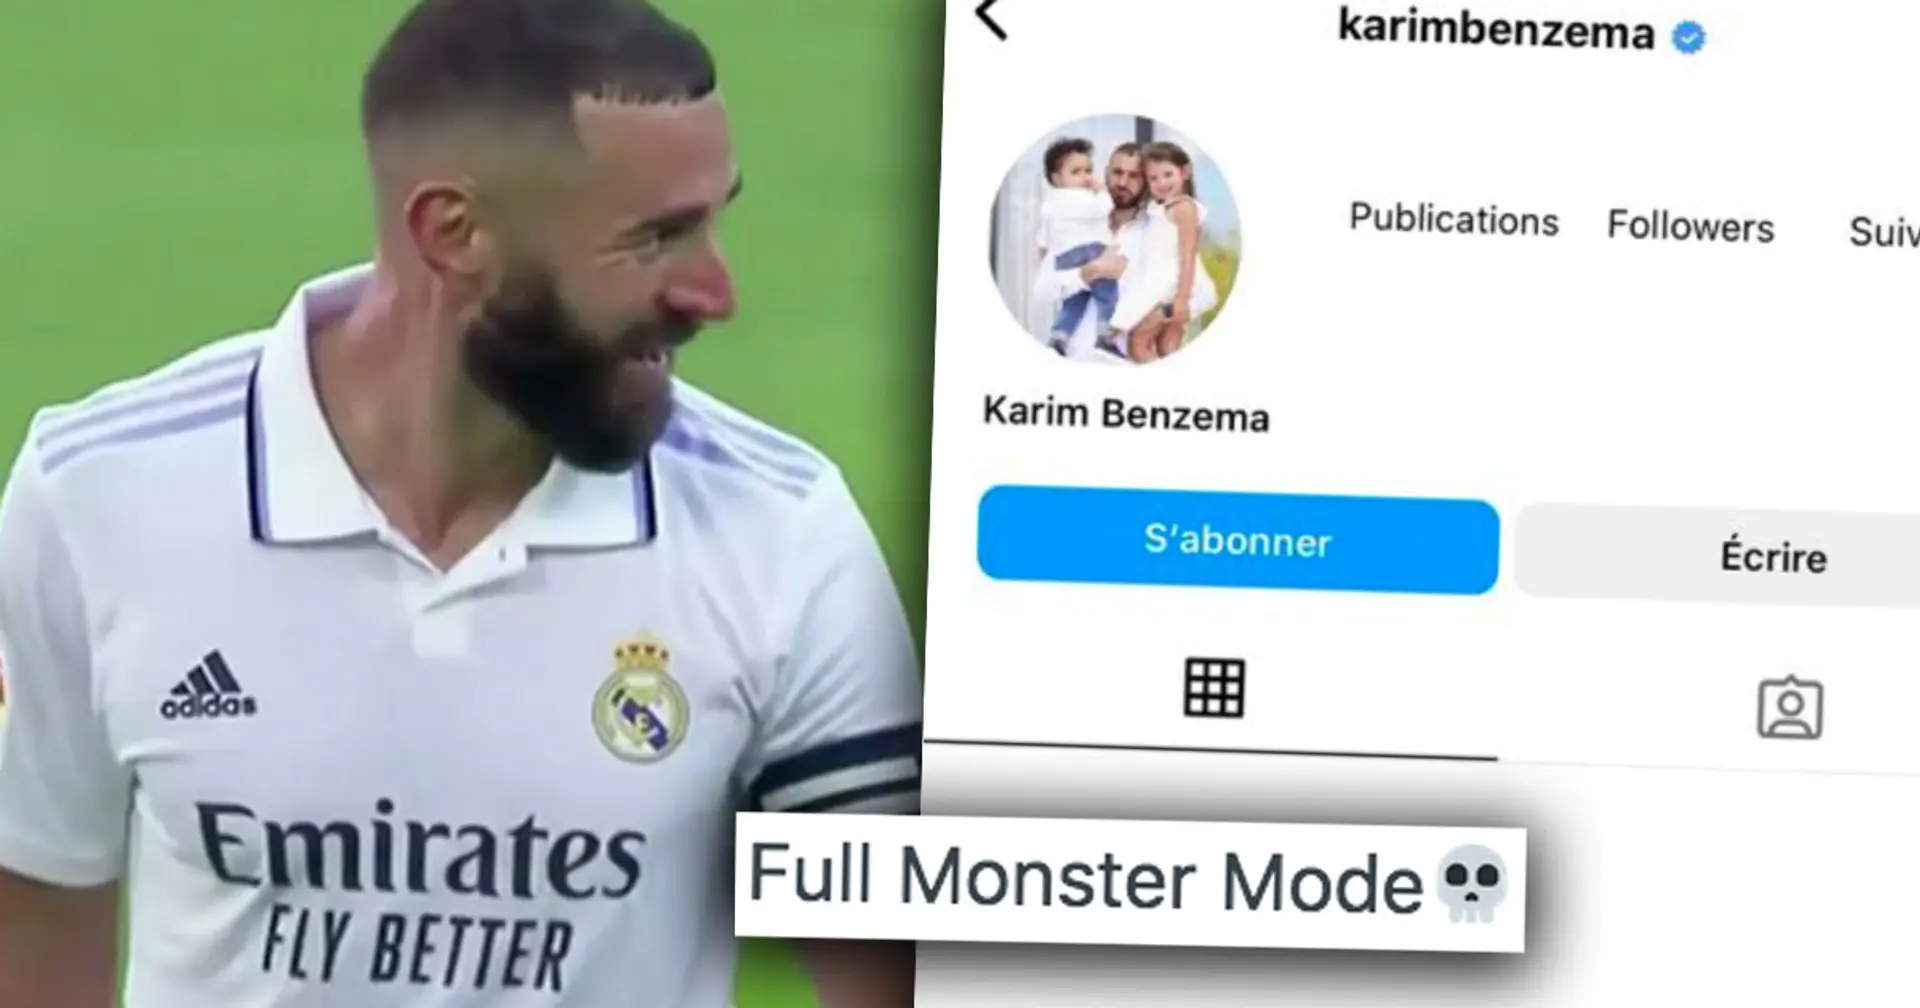 "Nächstes Spiel schießt er gleich 5 Tore": Benzema deaktiviert Instagram- und Twitter-Accounts - Fans reagieren darauf